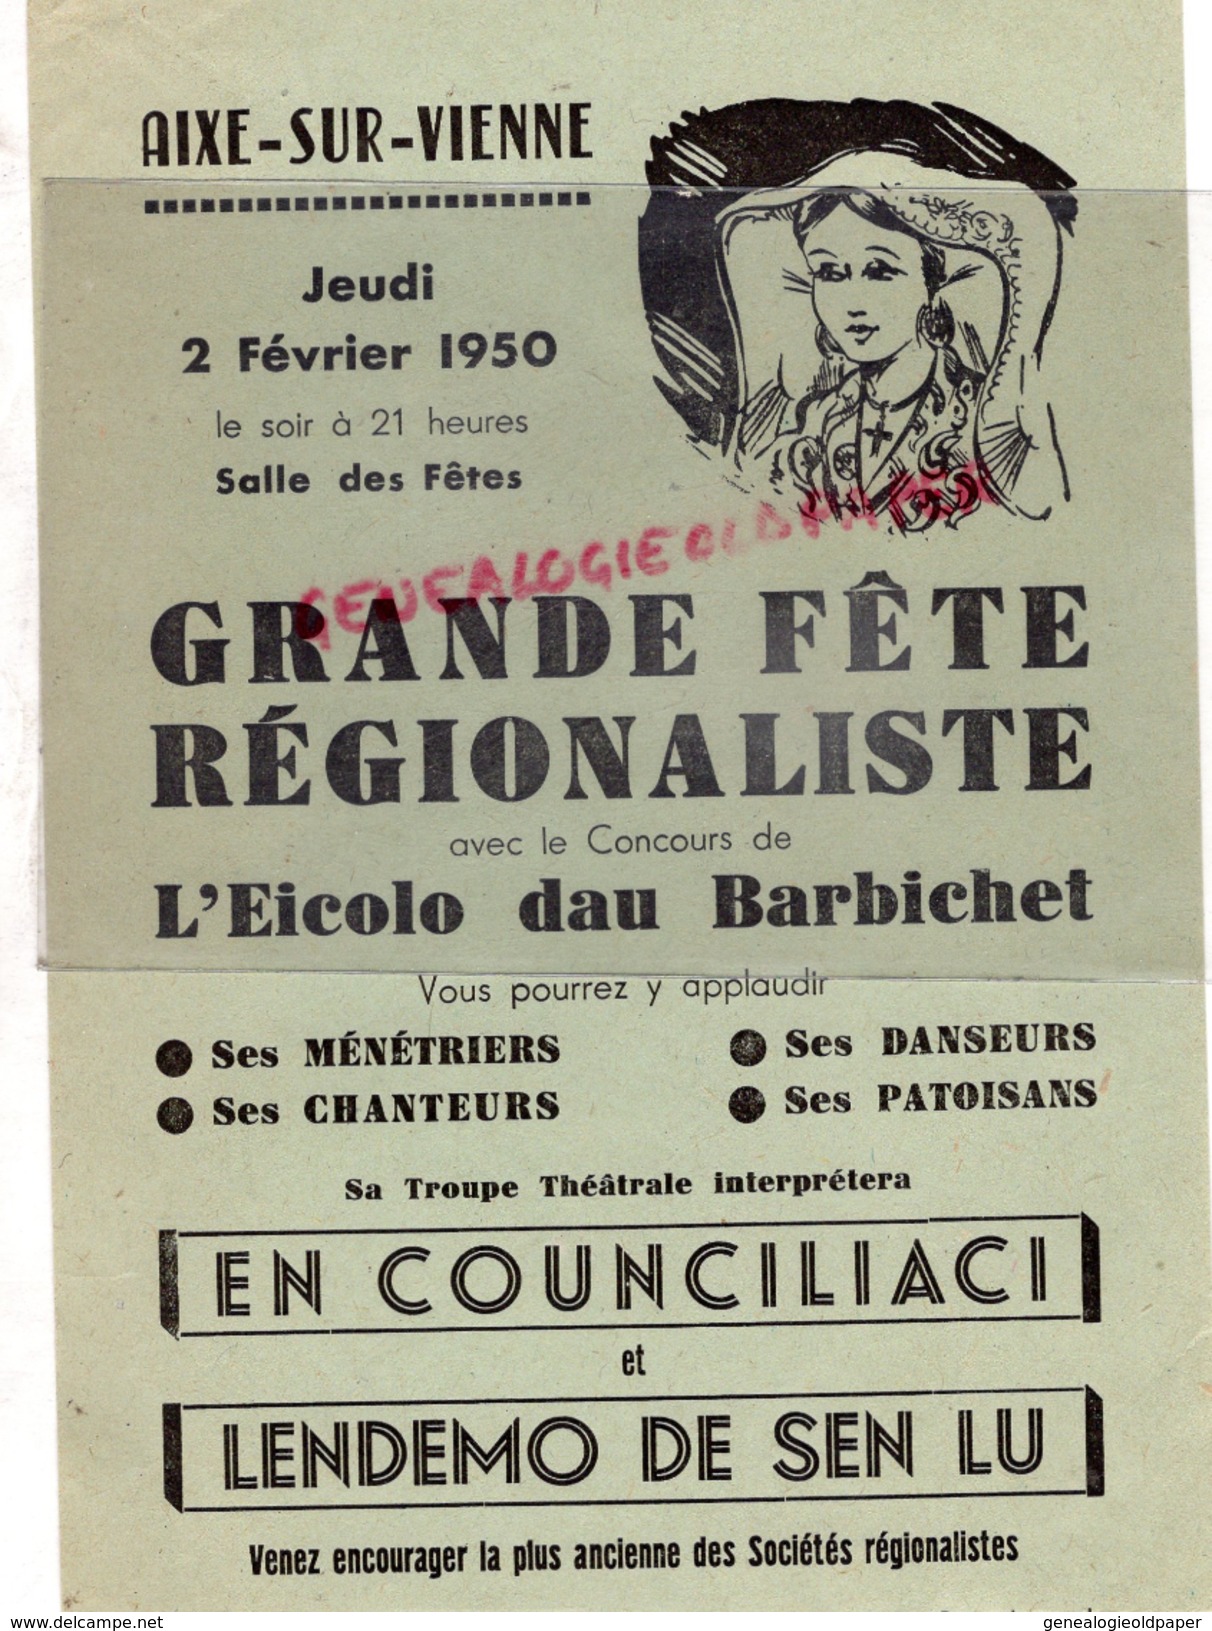 87 - AIXE SUR VIENNE- AFFICHE GRANDE FETE REGIONALISTE-EICOLO DAU BARBICHET-2 FEVRIER 1950- SALLE DES FETES - Affiches